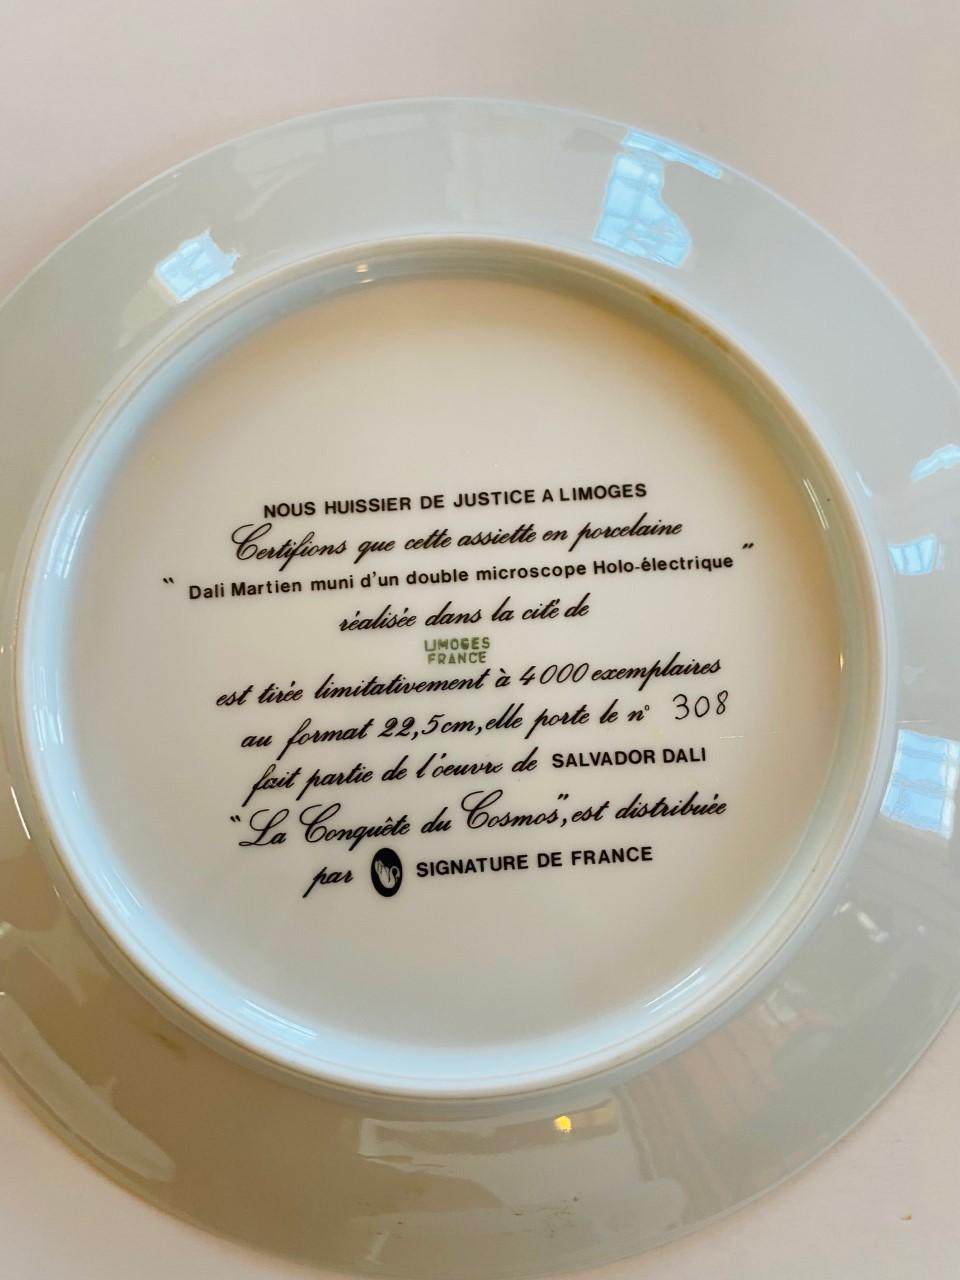 Art Nouveau Salvador Dali Porcelain Plates “Le Conquete du Cosmos” by Limoges Set of 6 For Sale